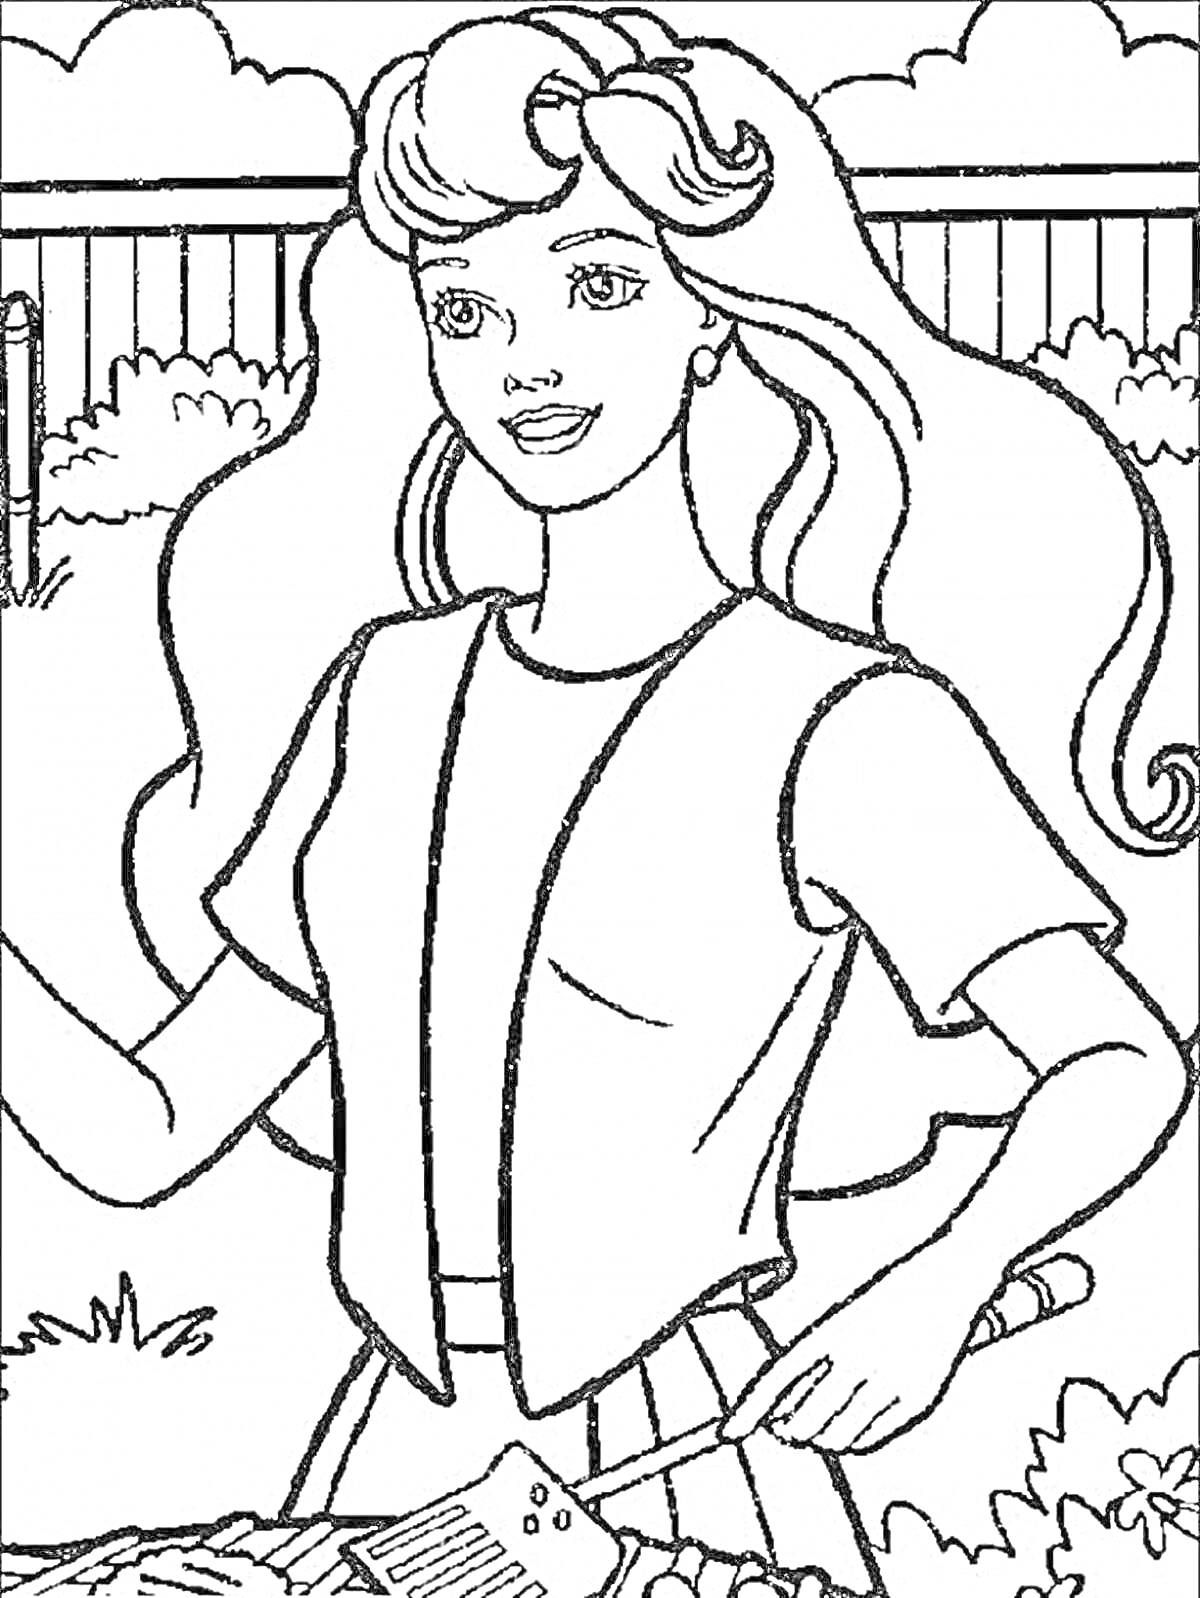 Барби за приготовлением еды на гриле в саду (Барби с длинными волосами, в жилетке и футболке, с лопаткой для гриля на фоне забора и кустарников).